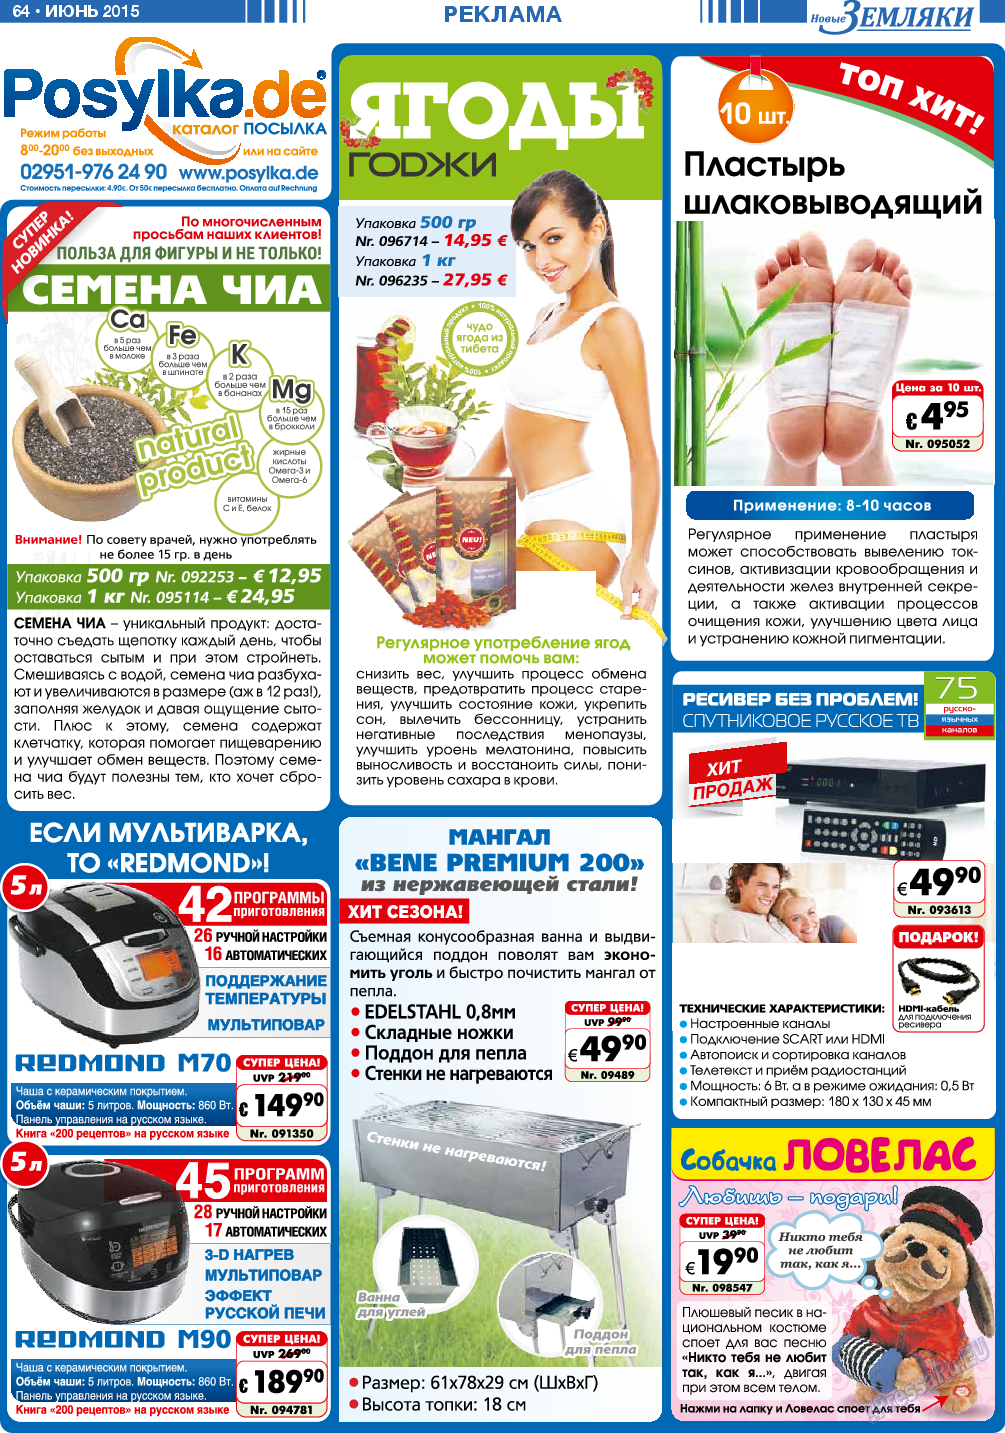 Новые Земляки, газета. 2015 №6 стр.64